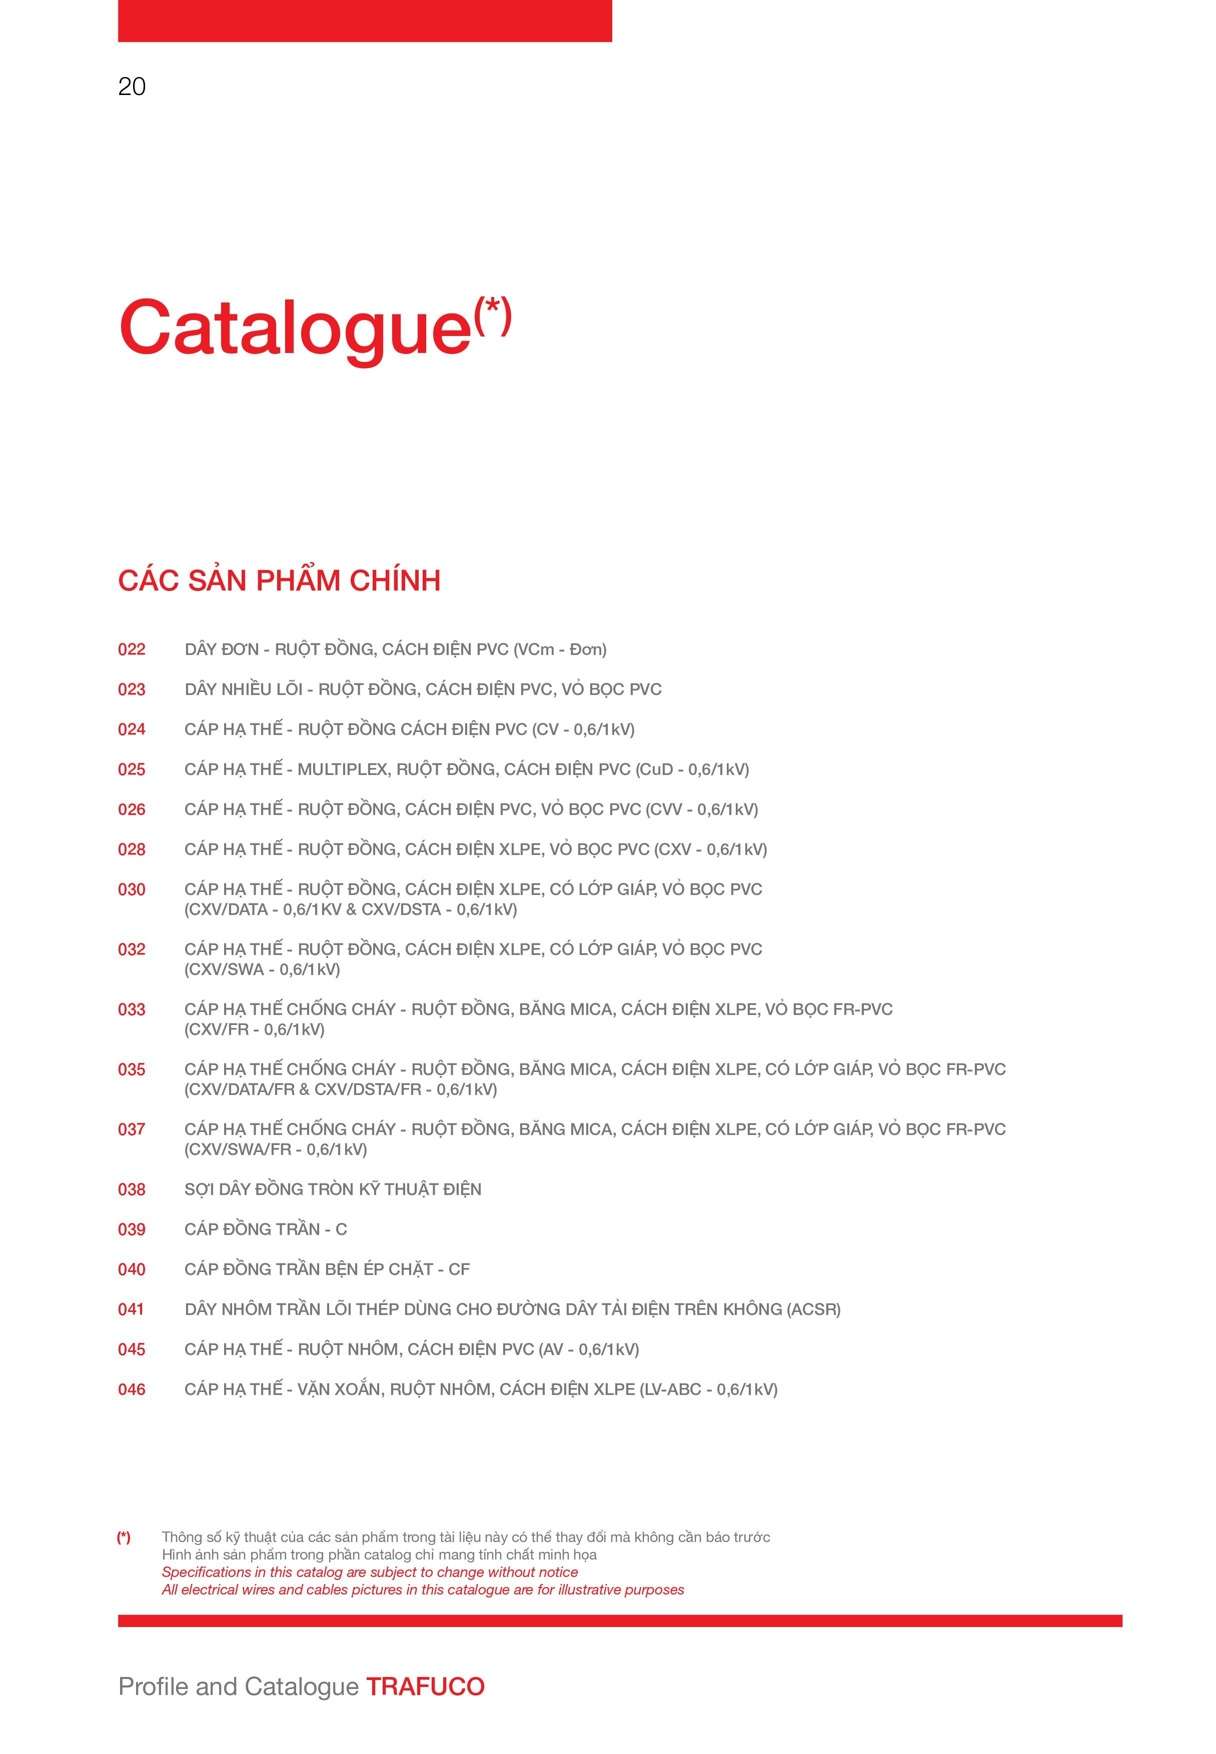 Catalogue Trần phú - Bảng tra tiết diện dây Trần Phú 14